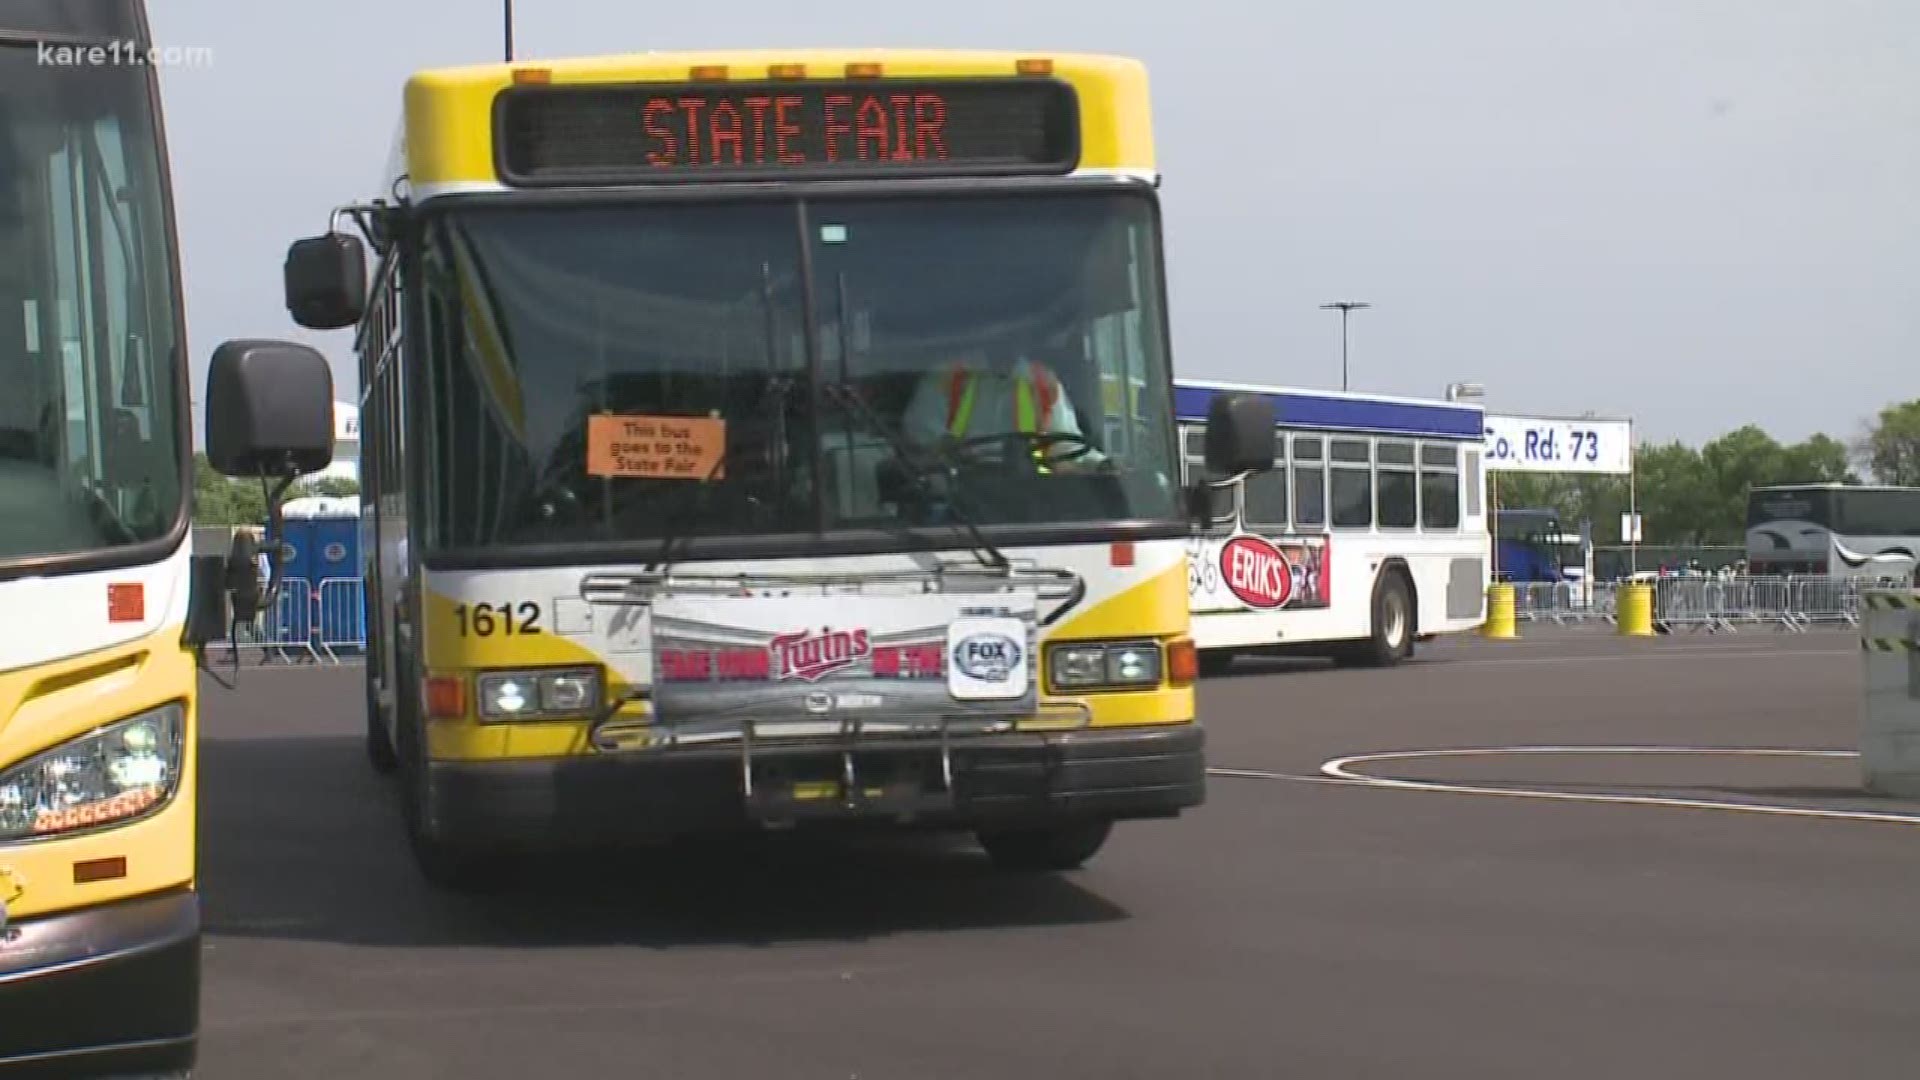 Metro Transit changing State Fair bus schedule